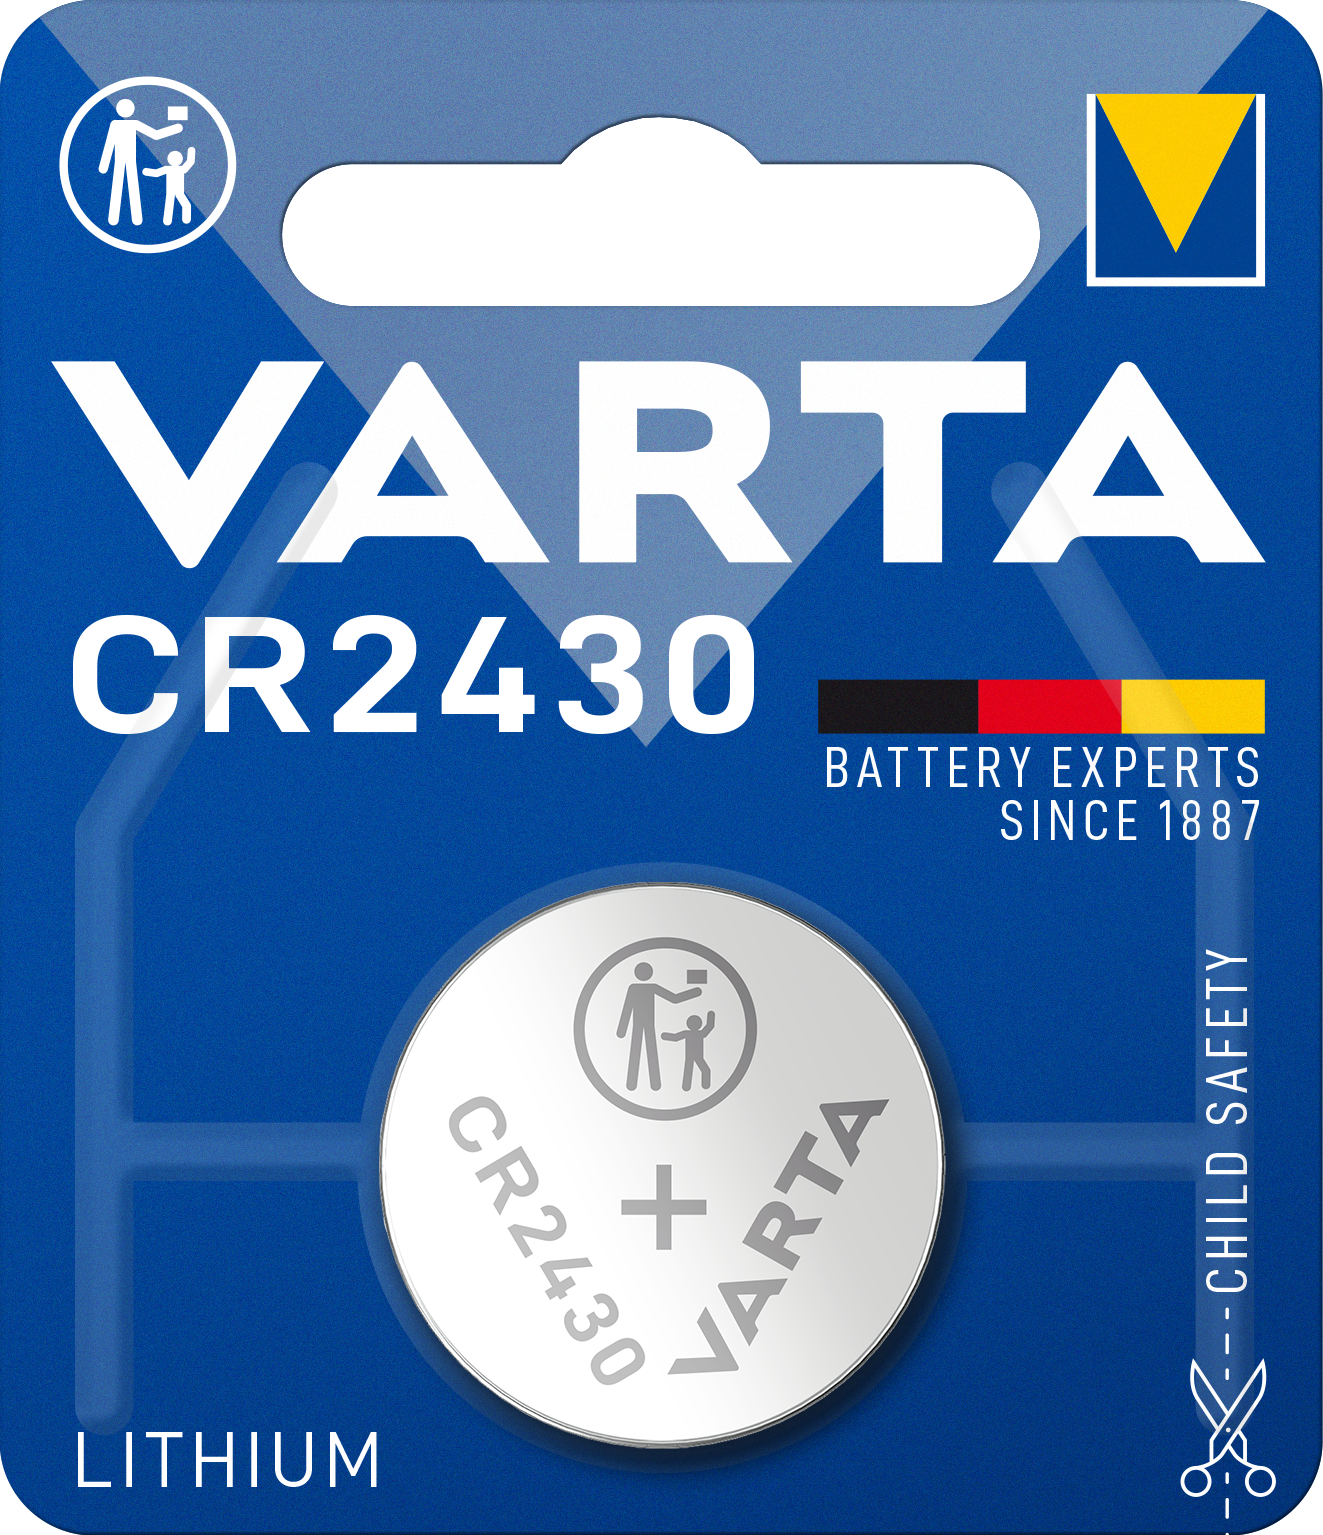 VARTA - Lithium - 2430